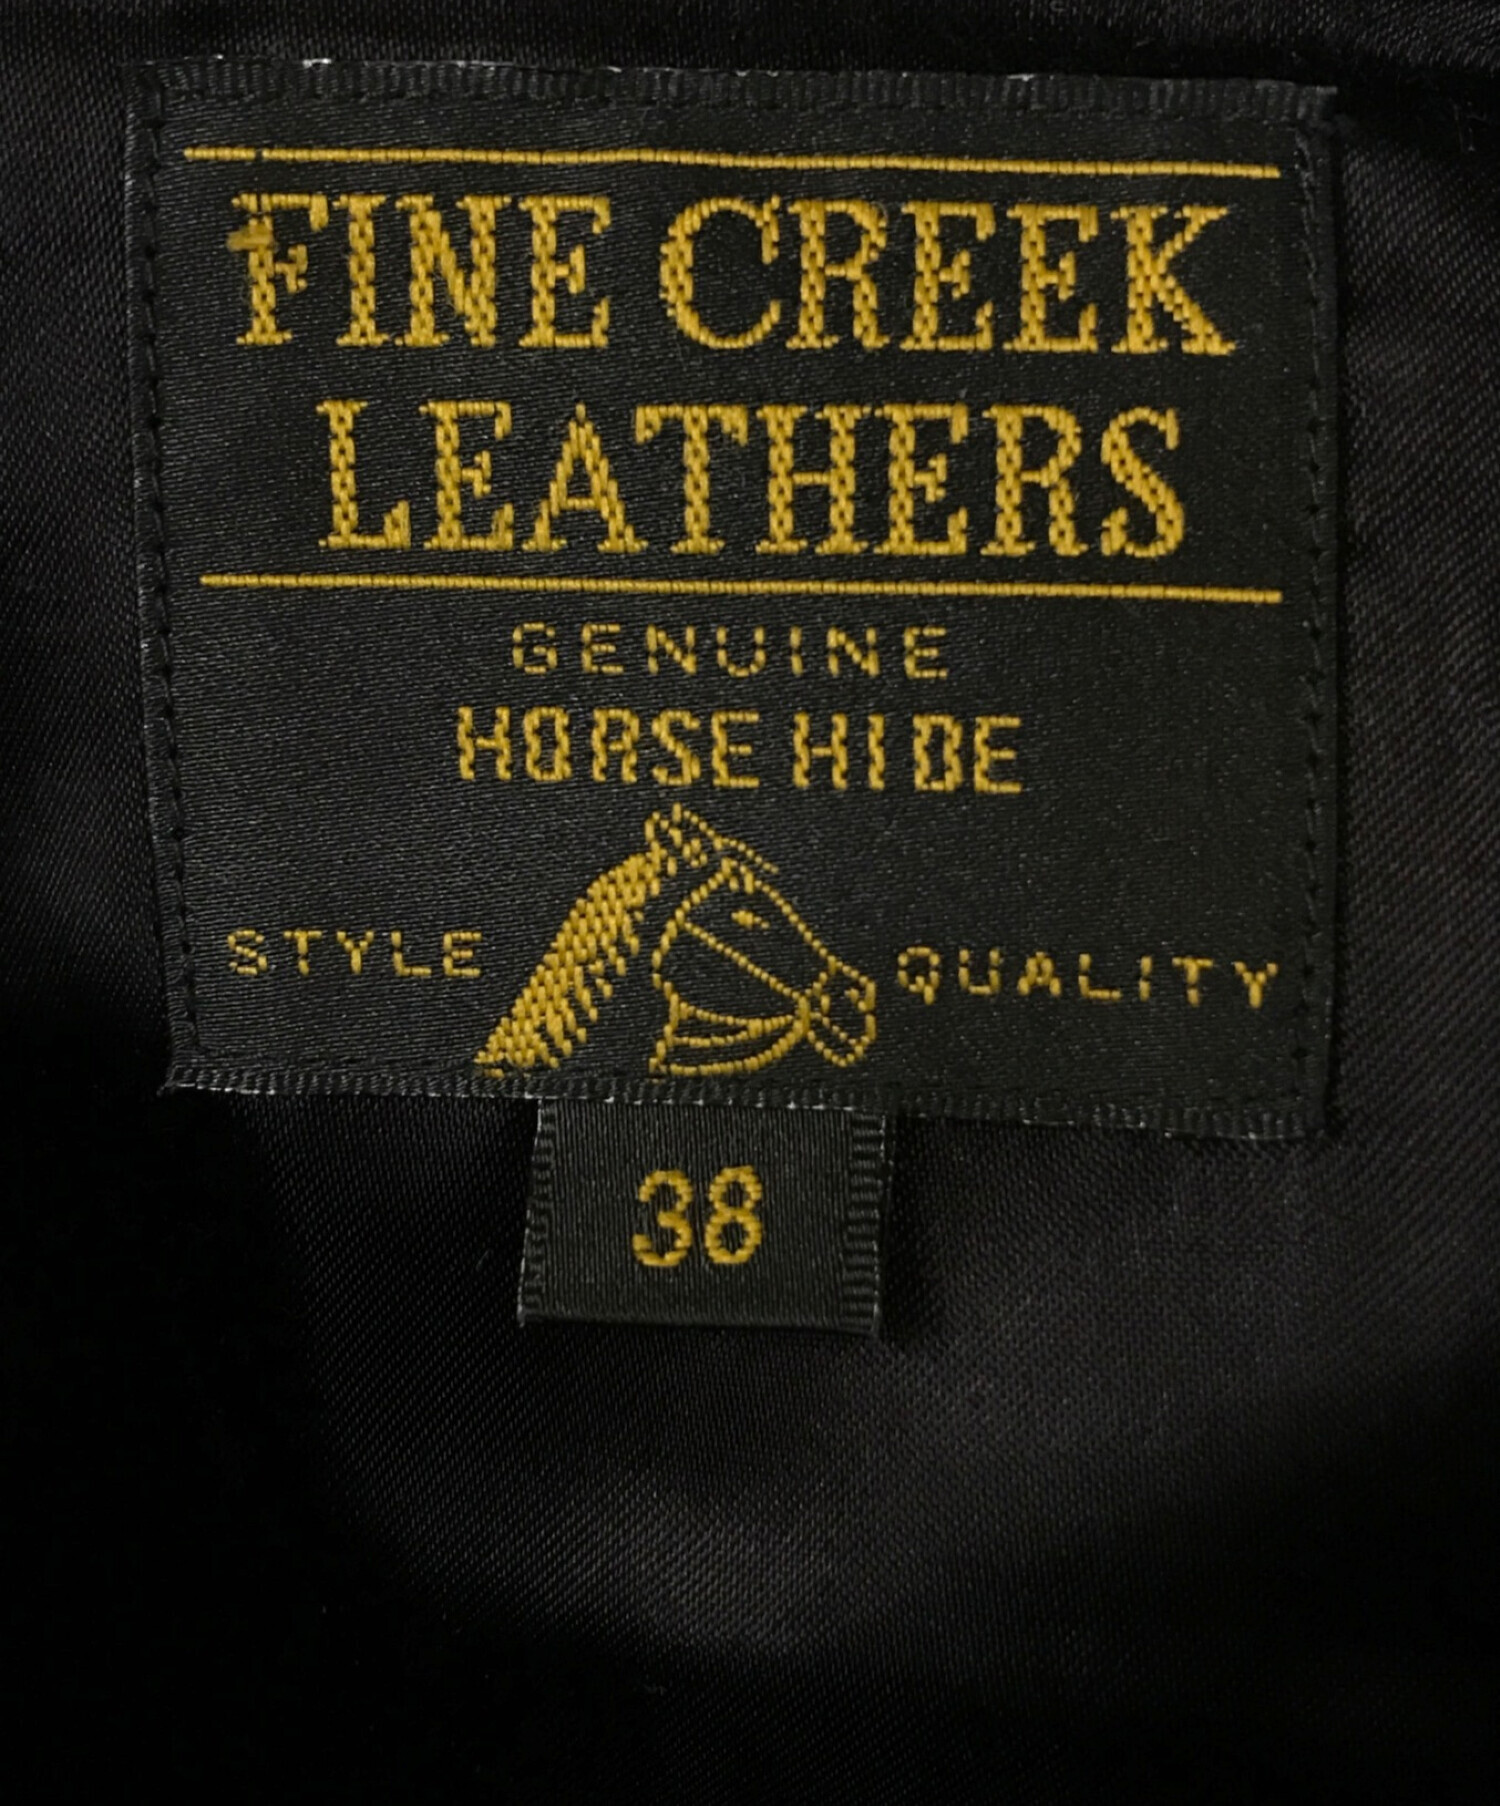 FINE CREEK LEATHERS (ファインクリークレザーズ) ホースハイドレザージャケット ブラック サイズ:38